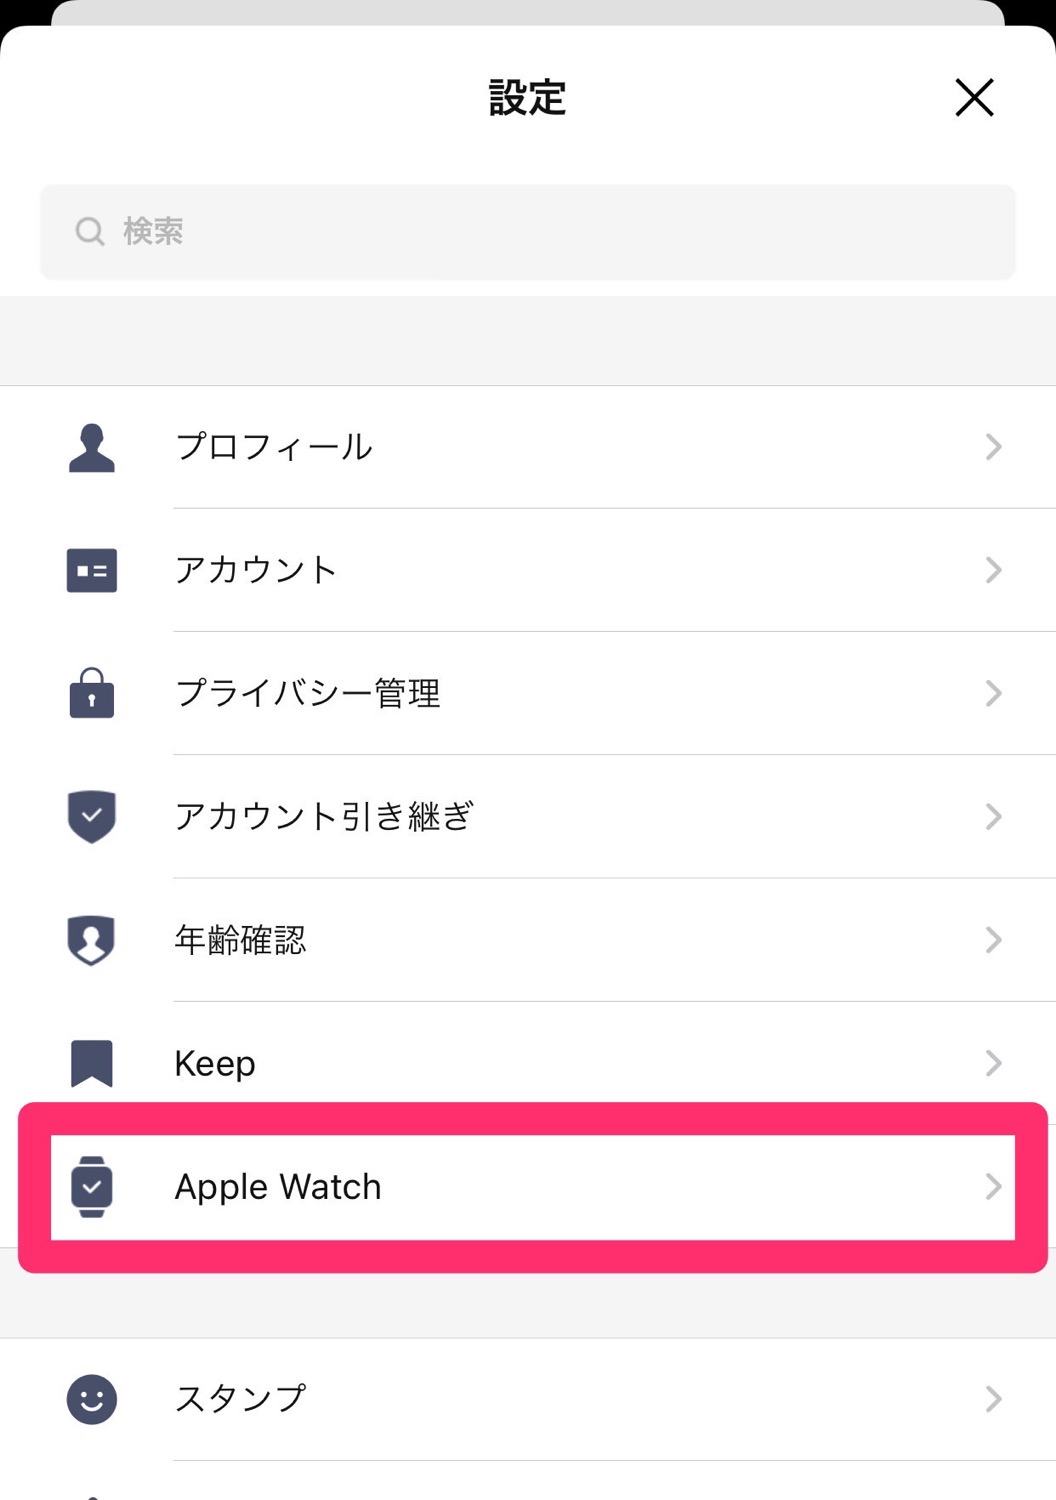 Apple watch line app 13 04